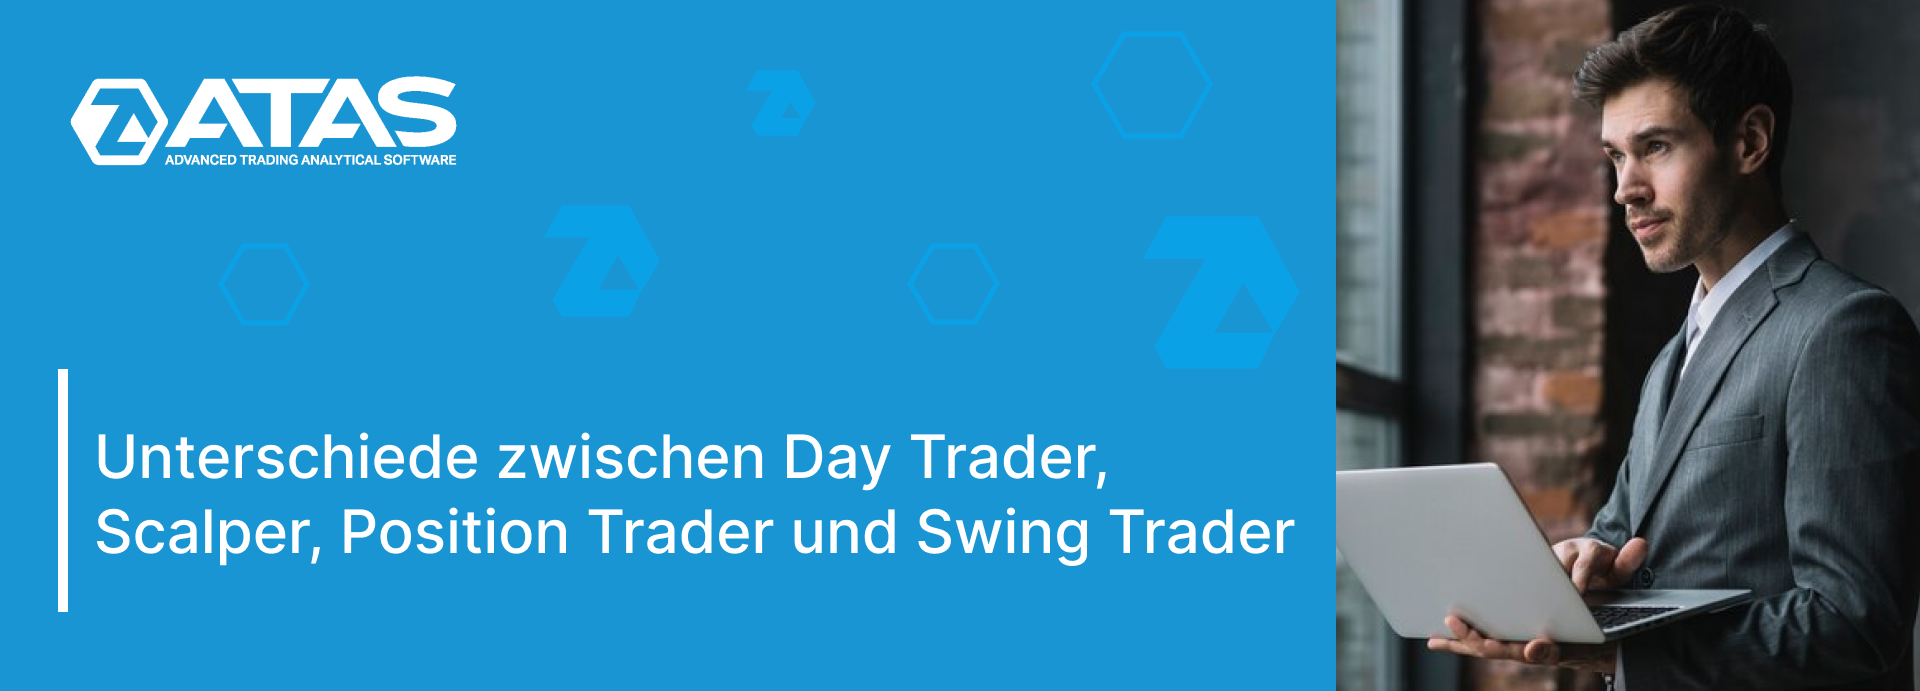 Unterschiede zwischen Day Trader, Scalper, Position Trader und Swing Trader